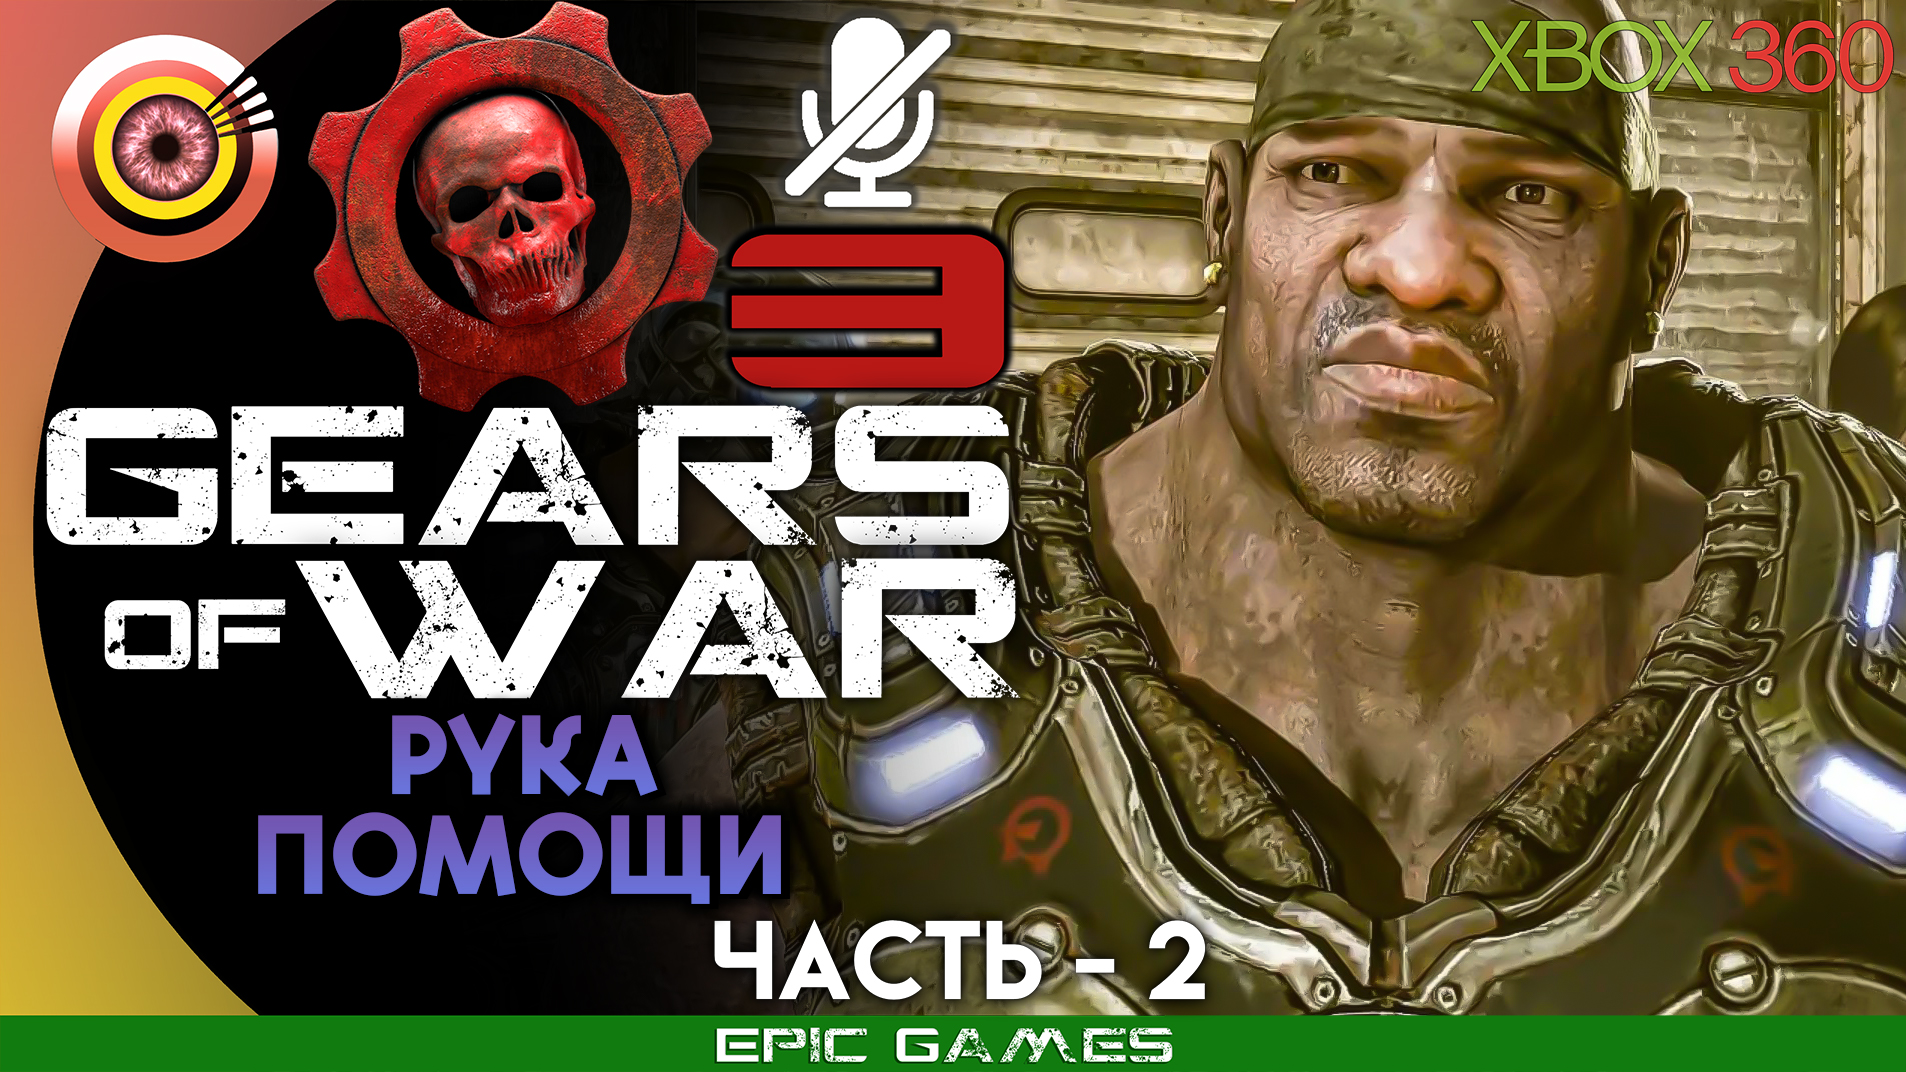 «Рука помощи» | 100% Прохождение Gears of War 3 (Xbox 360) Без комментариев — Часть 2